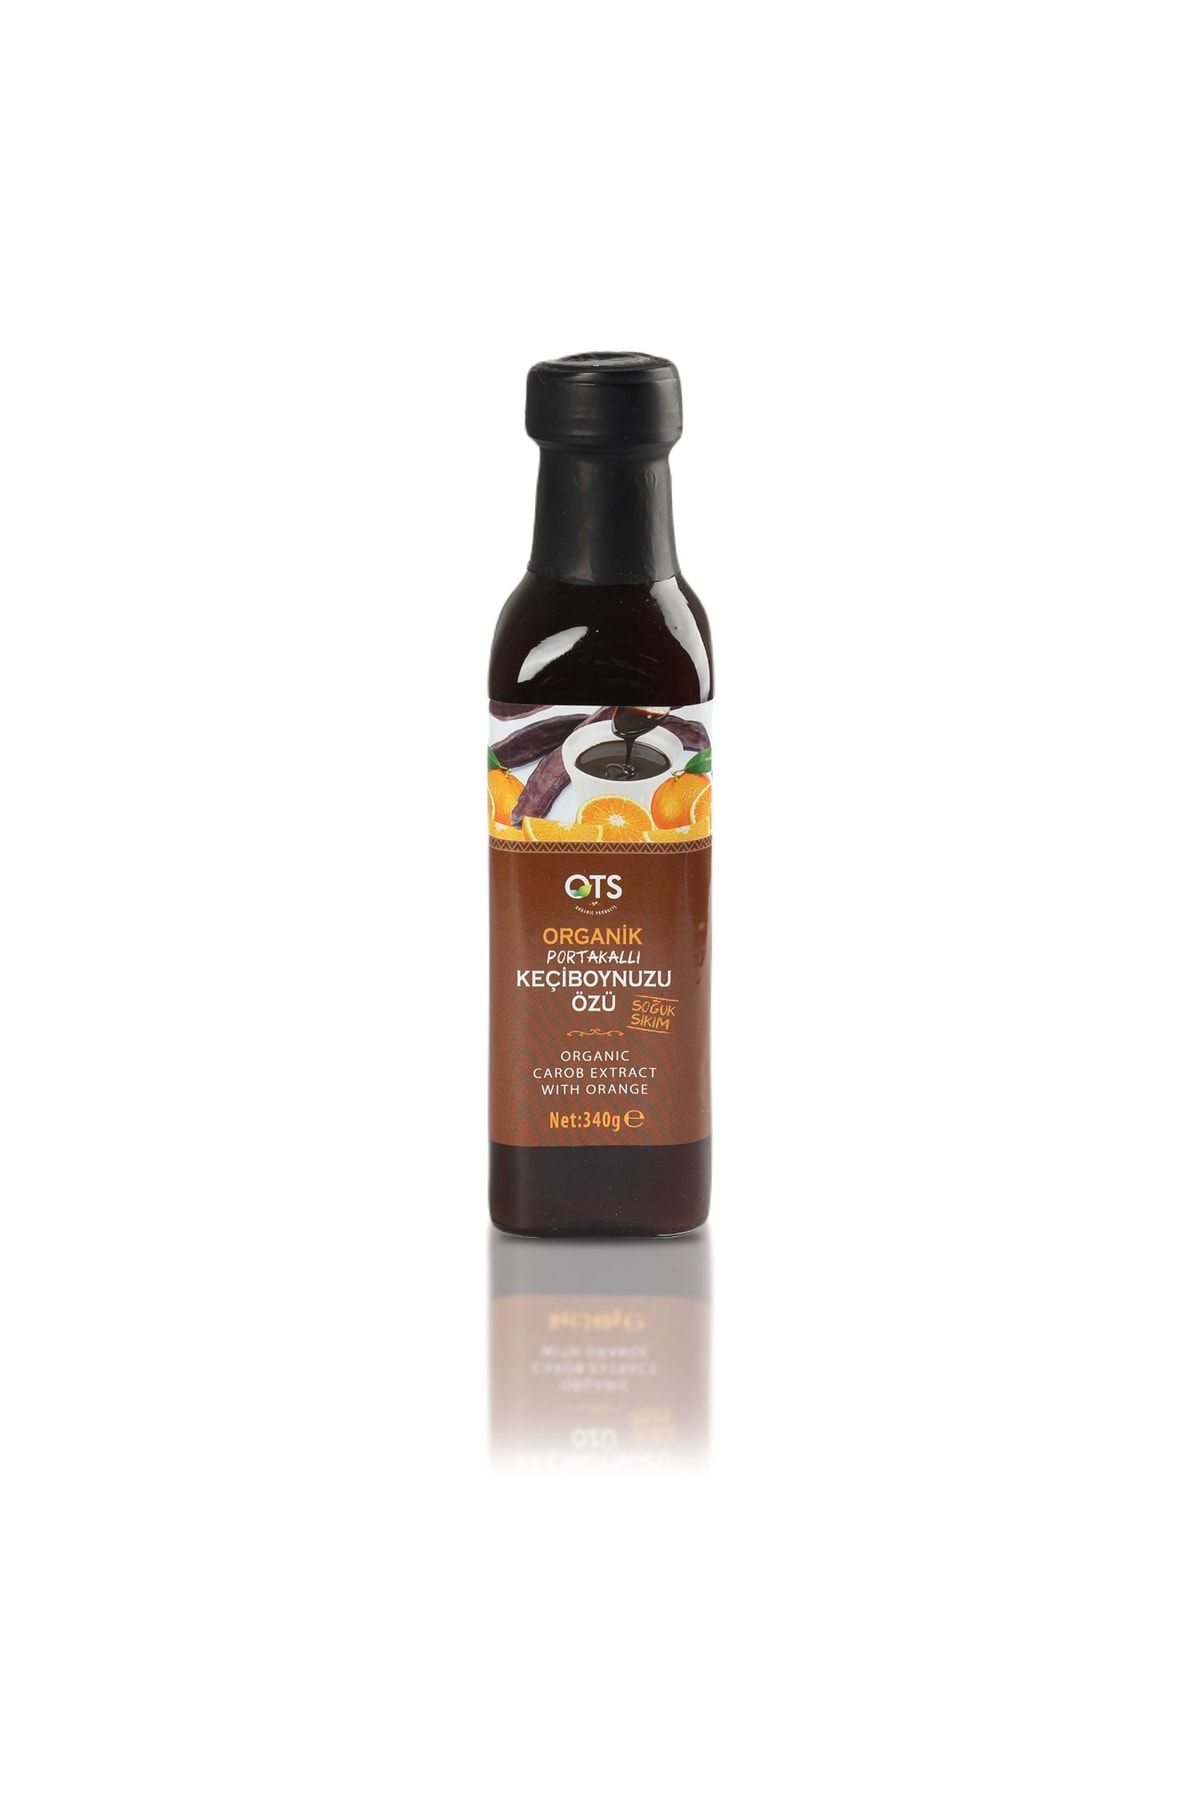 OTS Organik Organik Portakallı Keçiboynuzu Özü (340 G)